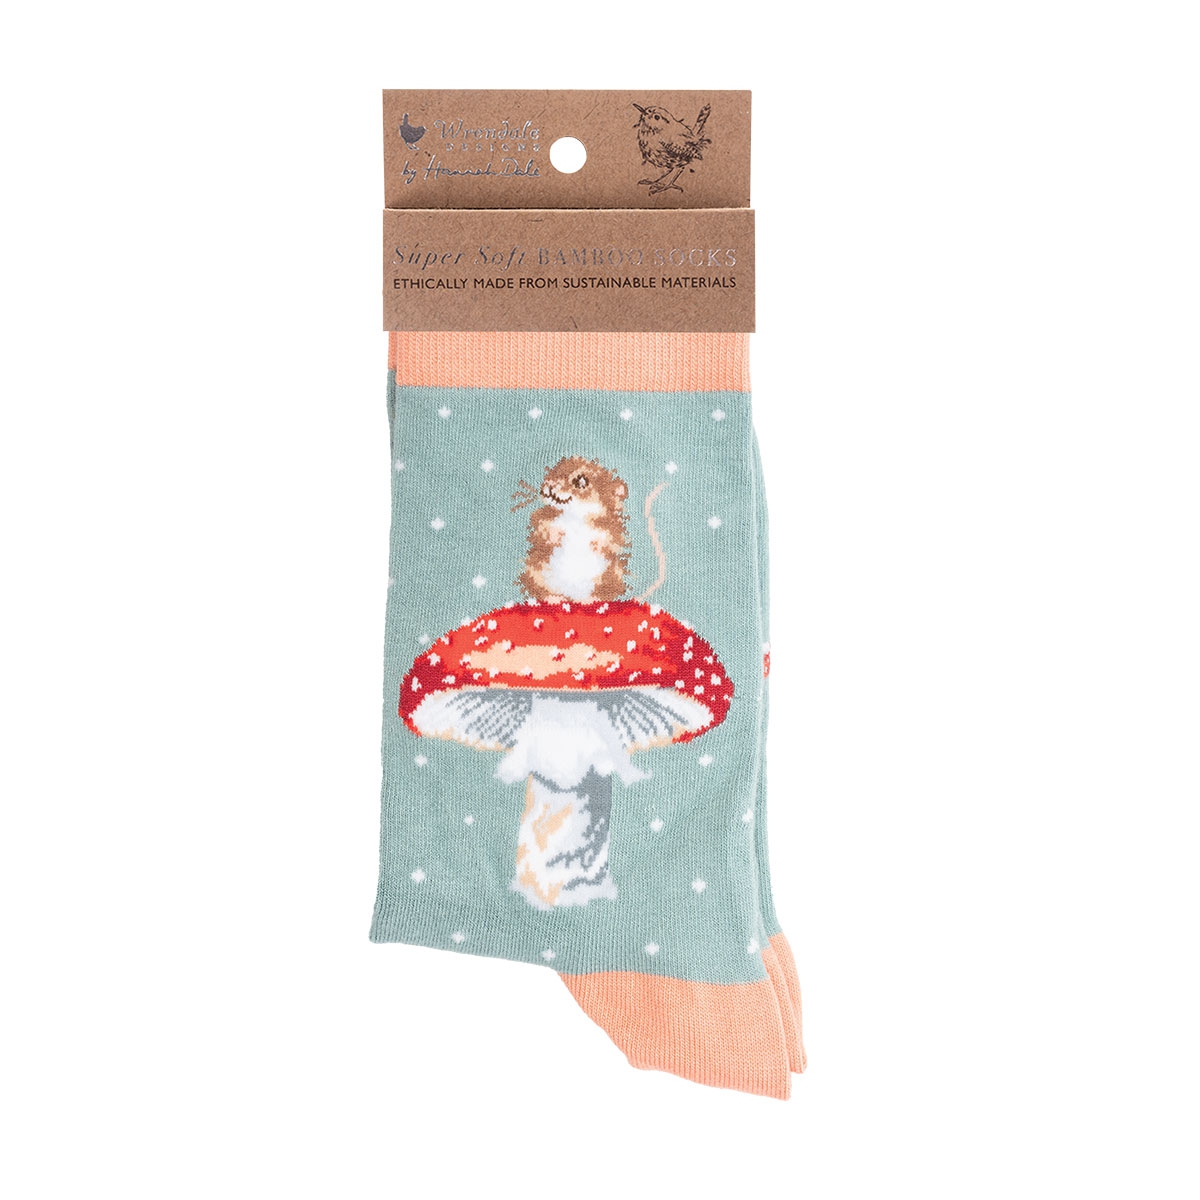 Souris sur chaussettes champignon "Fungi" taille femme Wrendale Designs